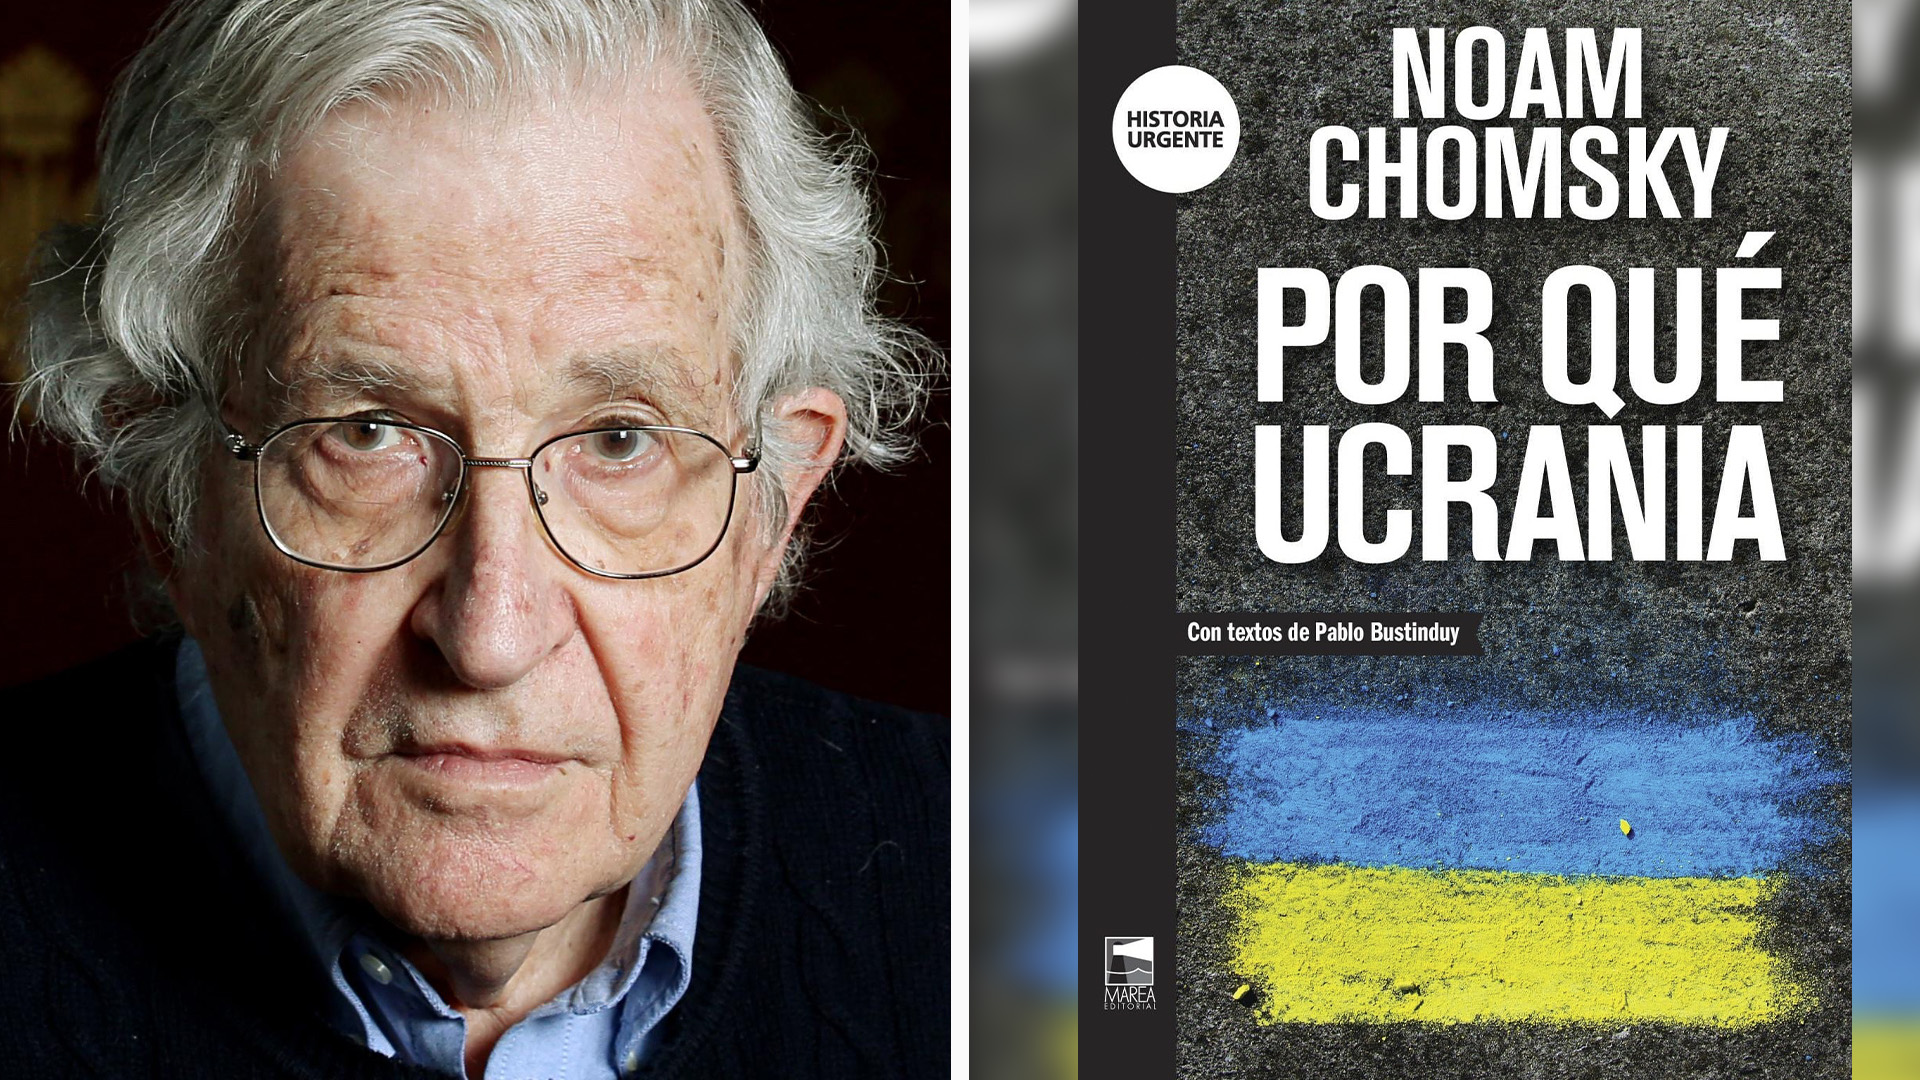 “Por que a Ucrânia” reúne uma série de entrevistas que o filósofo e linguista norte-americano Noam Chomsky concedeu sobre a guerra que já dura um ano, nas quais oferece uma perspectiva diferente e cheia de nuances para não cair nas velhas dicotomias impostas . 